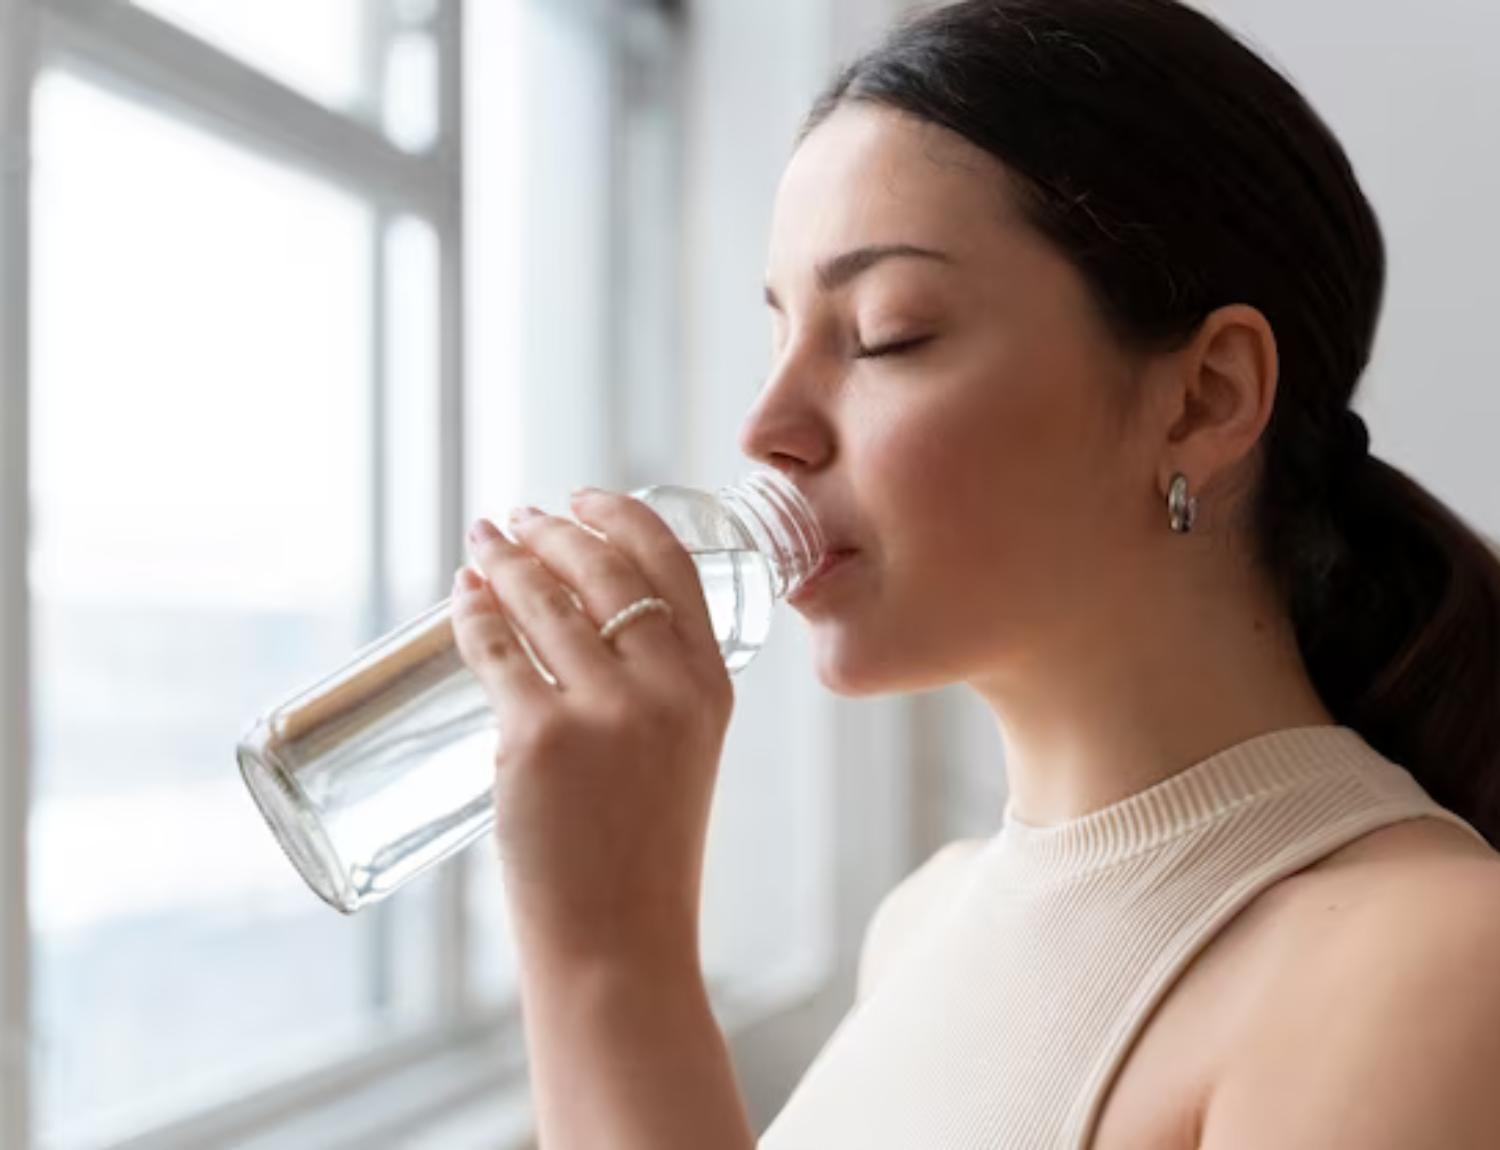 Health Benefits of Hot Water